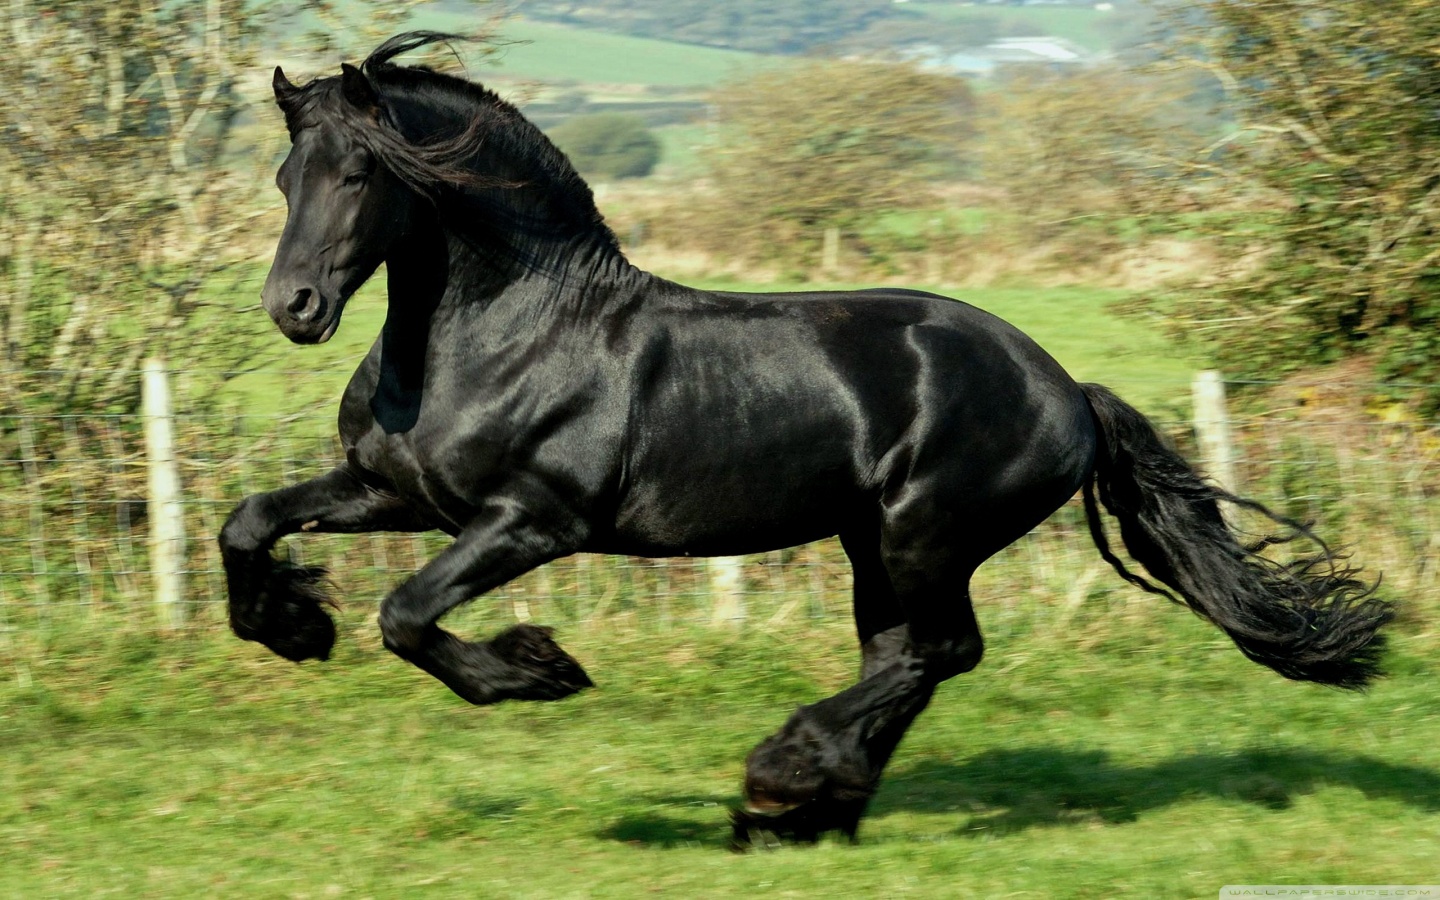  Black Horse Computer Portrait Best Black Horse Photography Wallpaper